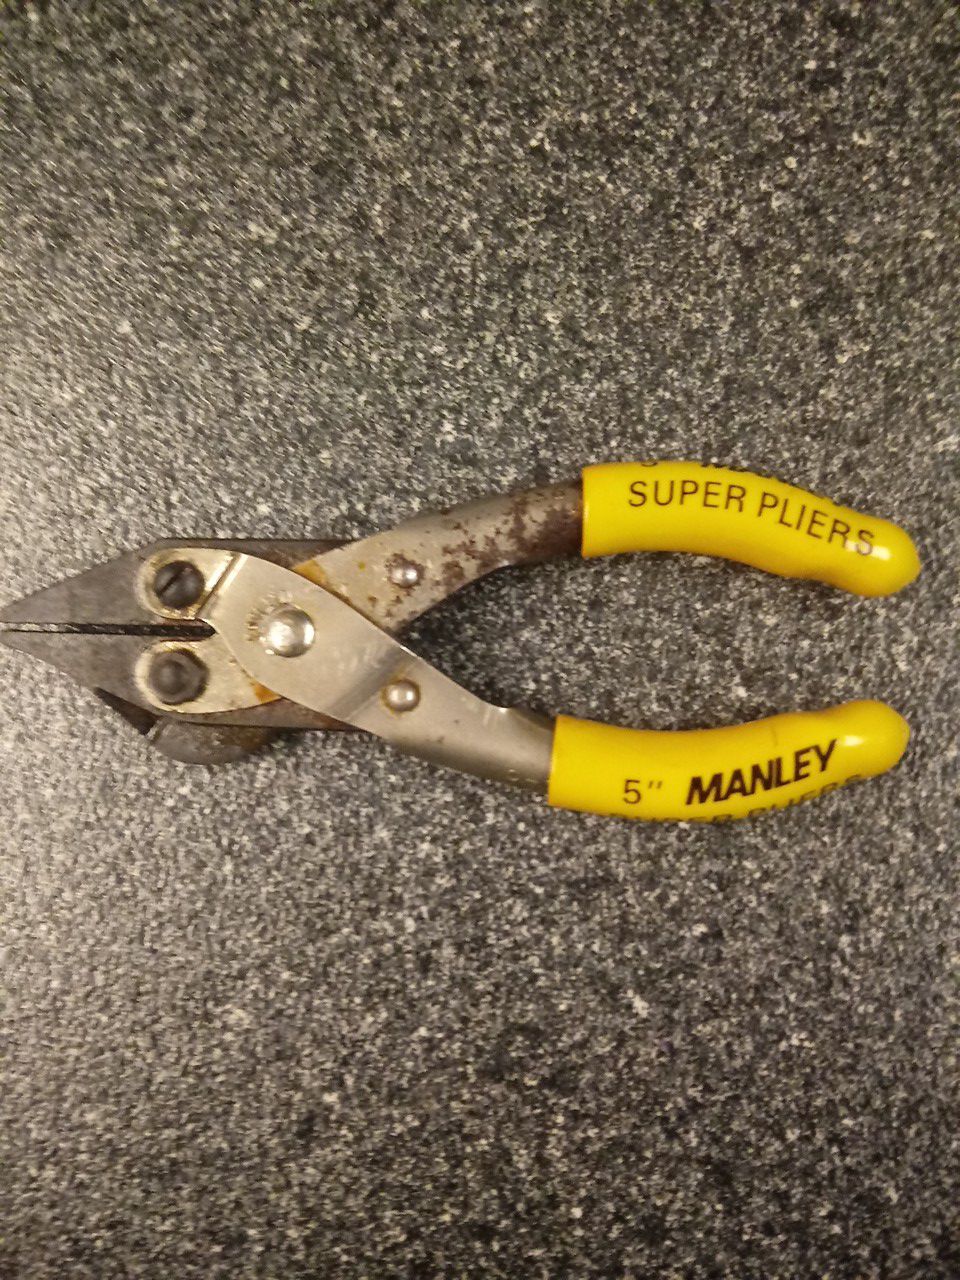 Manley 5" super pliers fishing gear